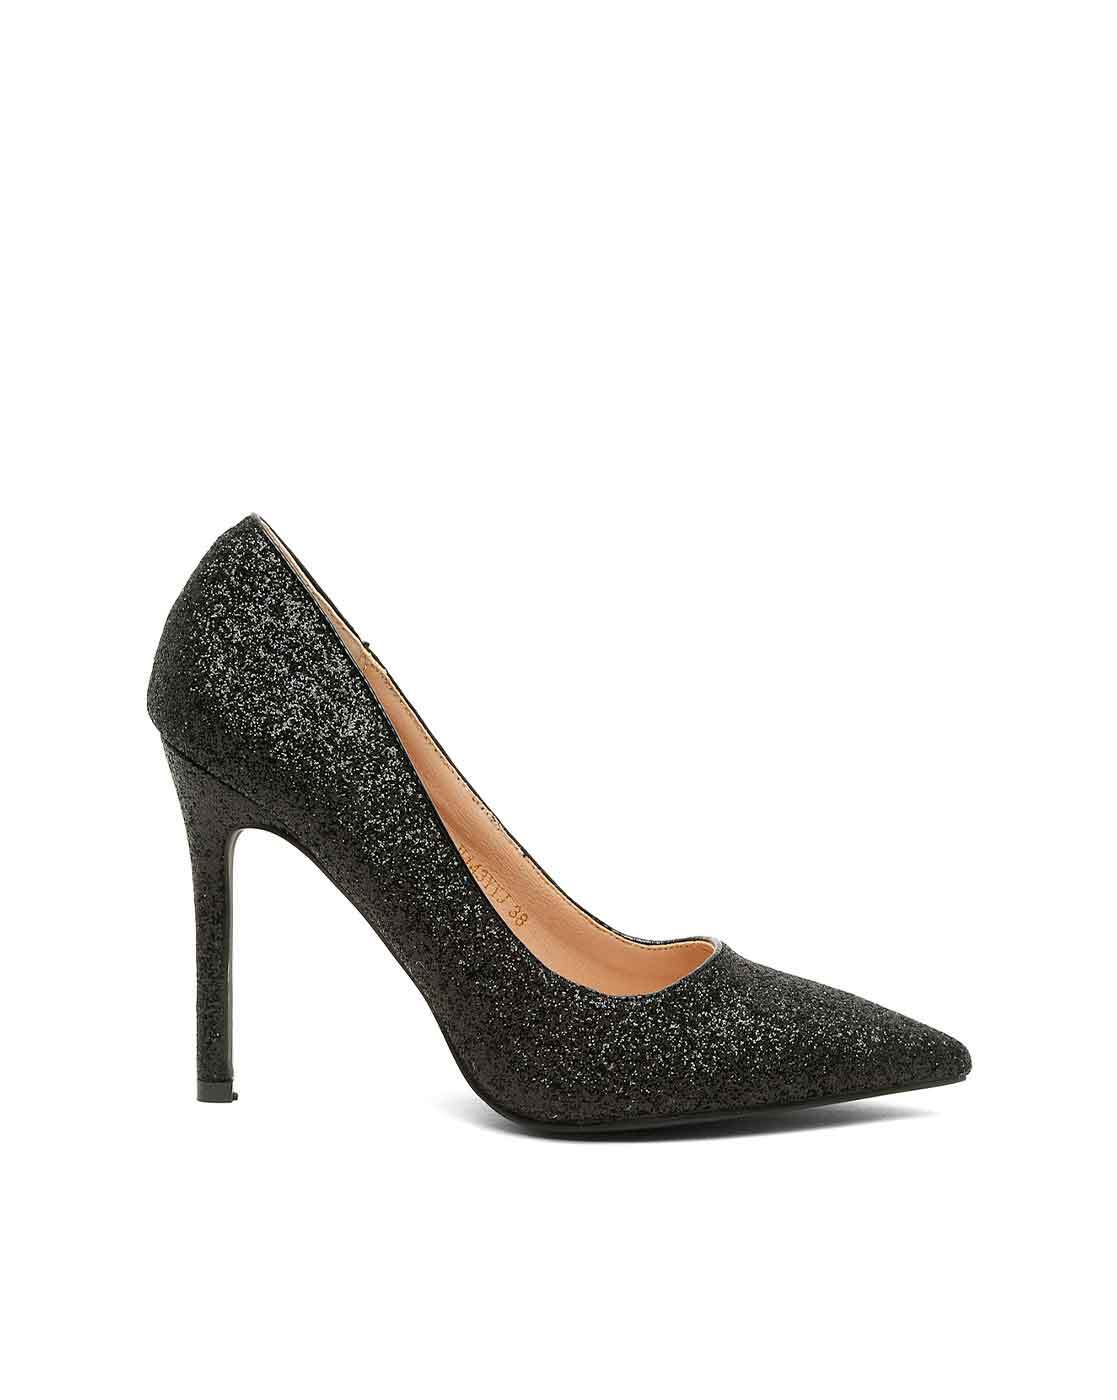 Black Sparkly Heels Platform Pumps Ankle Strap Glitter Shoes | Black  sparkly heels, Heels, Sparkly heels